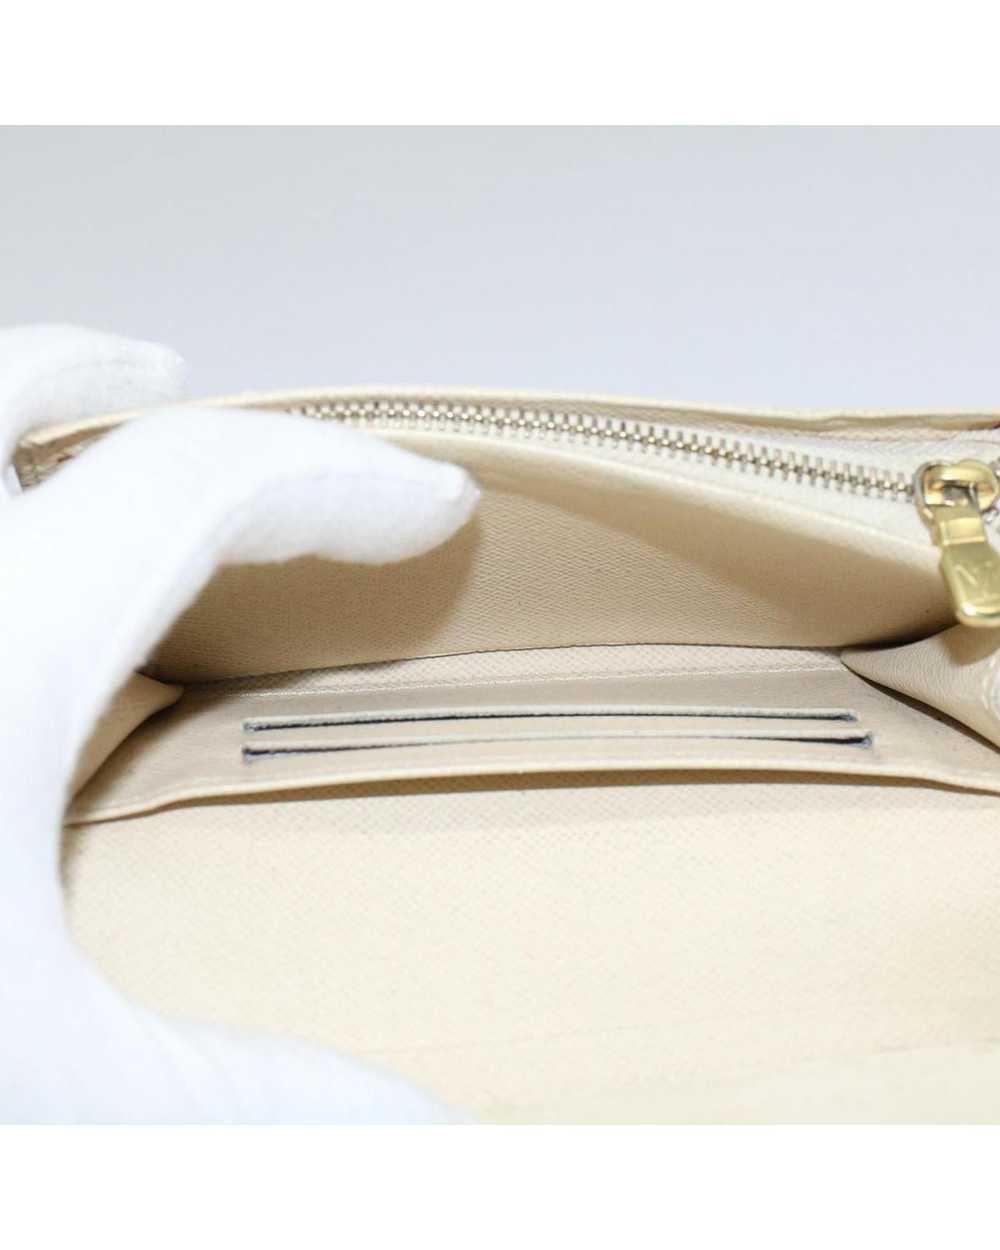 Louis Vuitton Damier Azur Wallet with Clasp Button - image 9